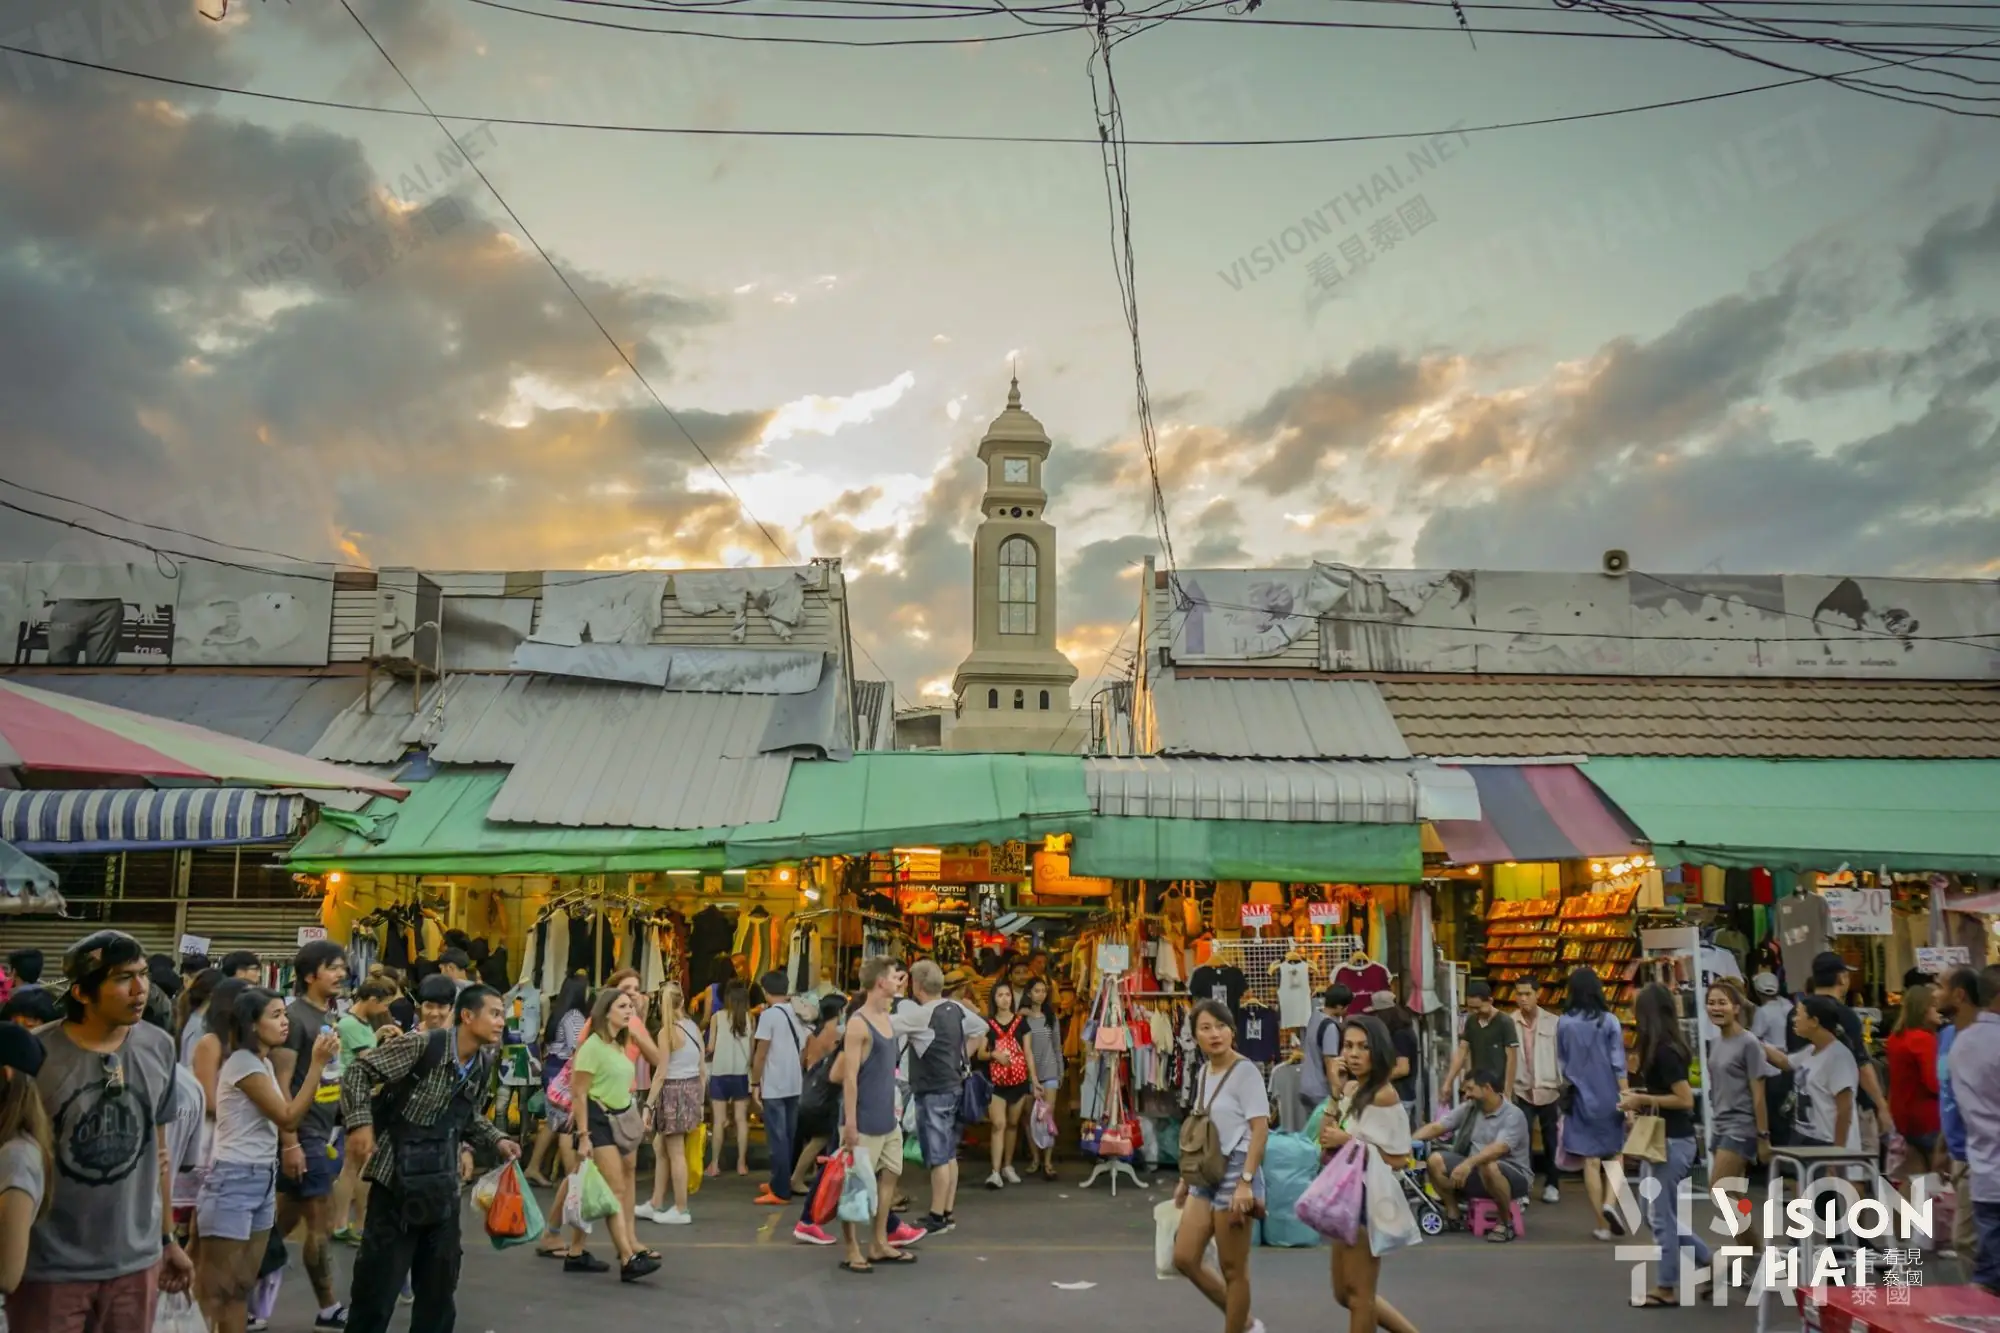 洽圖洽週末市集（恰圖恰週末市集 ; Chatuchak Weekend Market）號稱是全球最大市集（圖片來源：Vision Thai看見泰國）